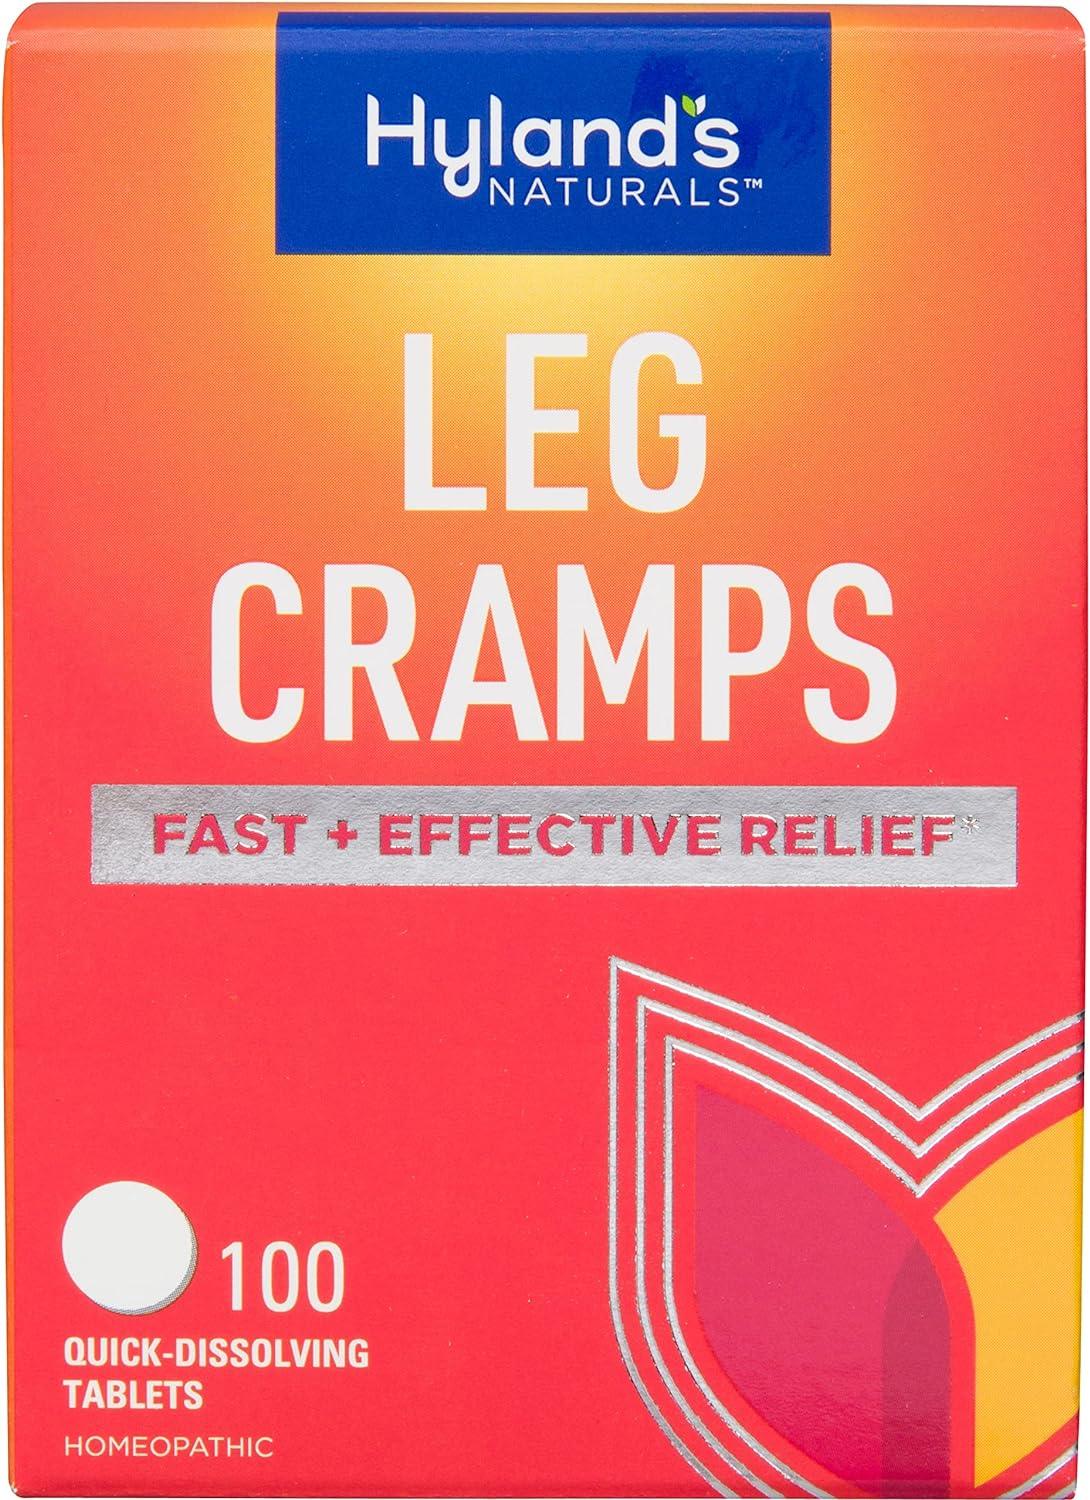 Hyland's Leg Cramps | Soulagement des Crampes aux Jambes - mondialpharma.com